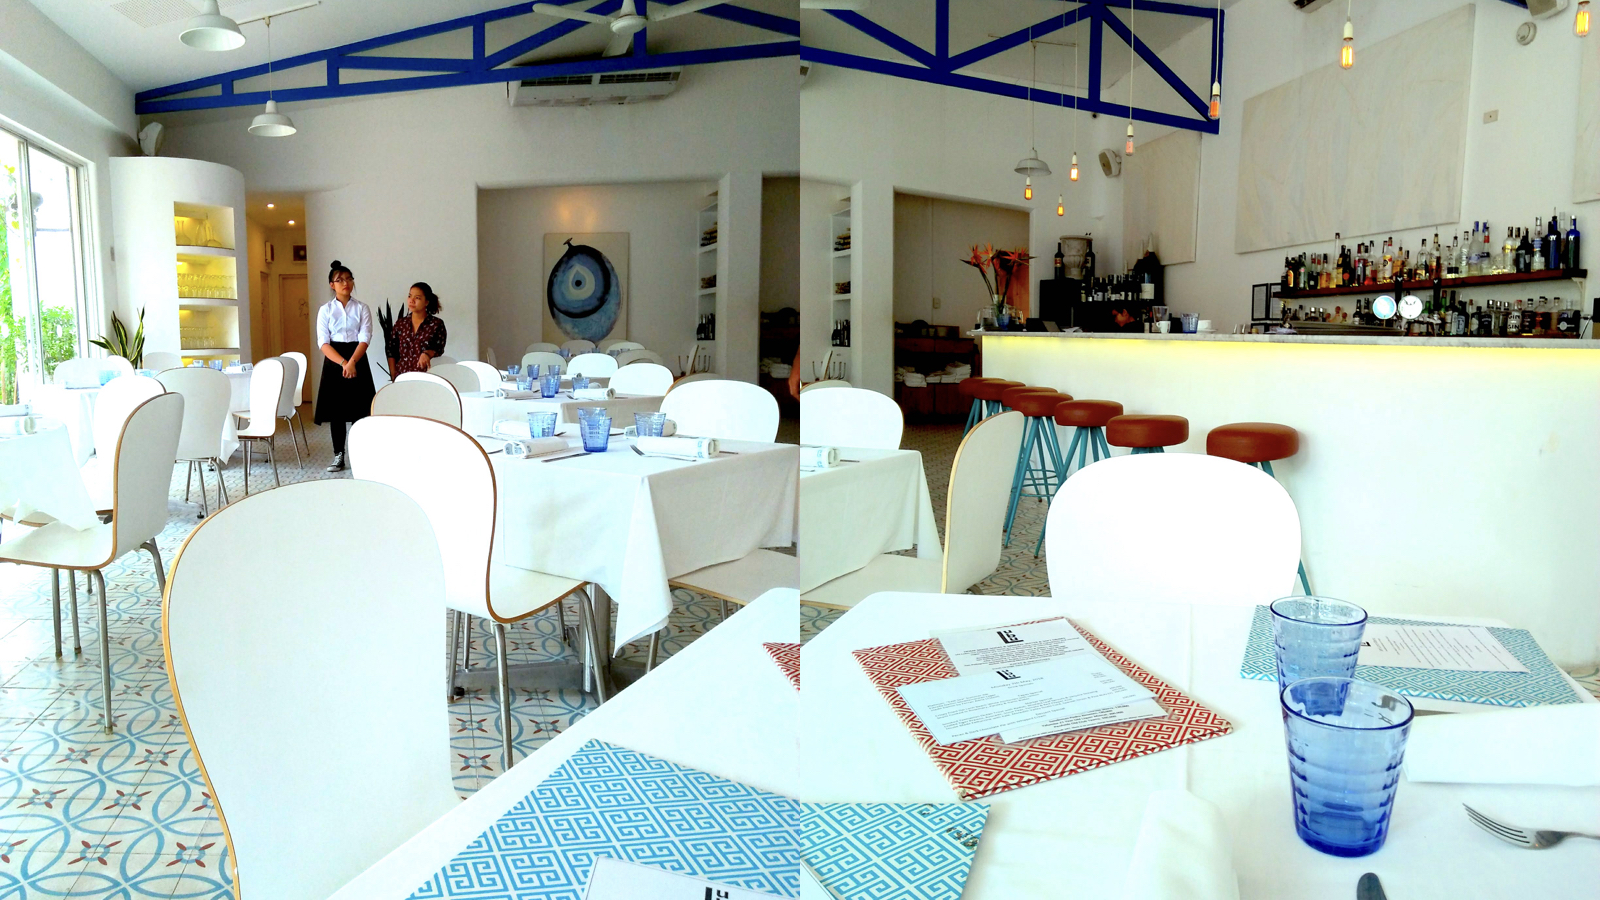 地中海料理ルブの内装 地中海の雰囲気が漂う青と白で統一された家具食器類